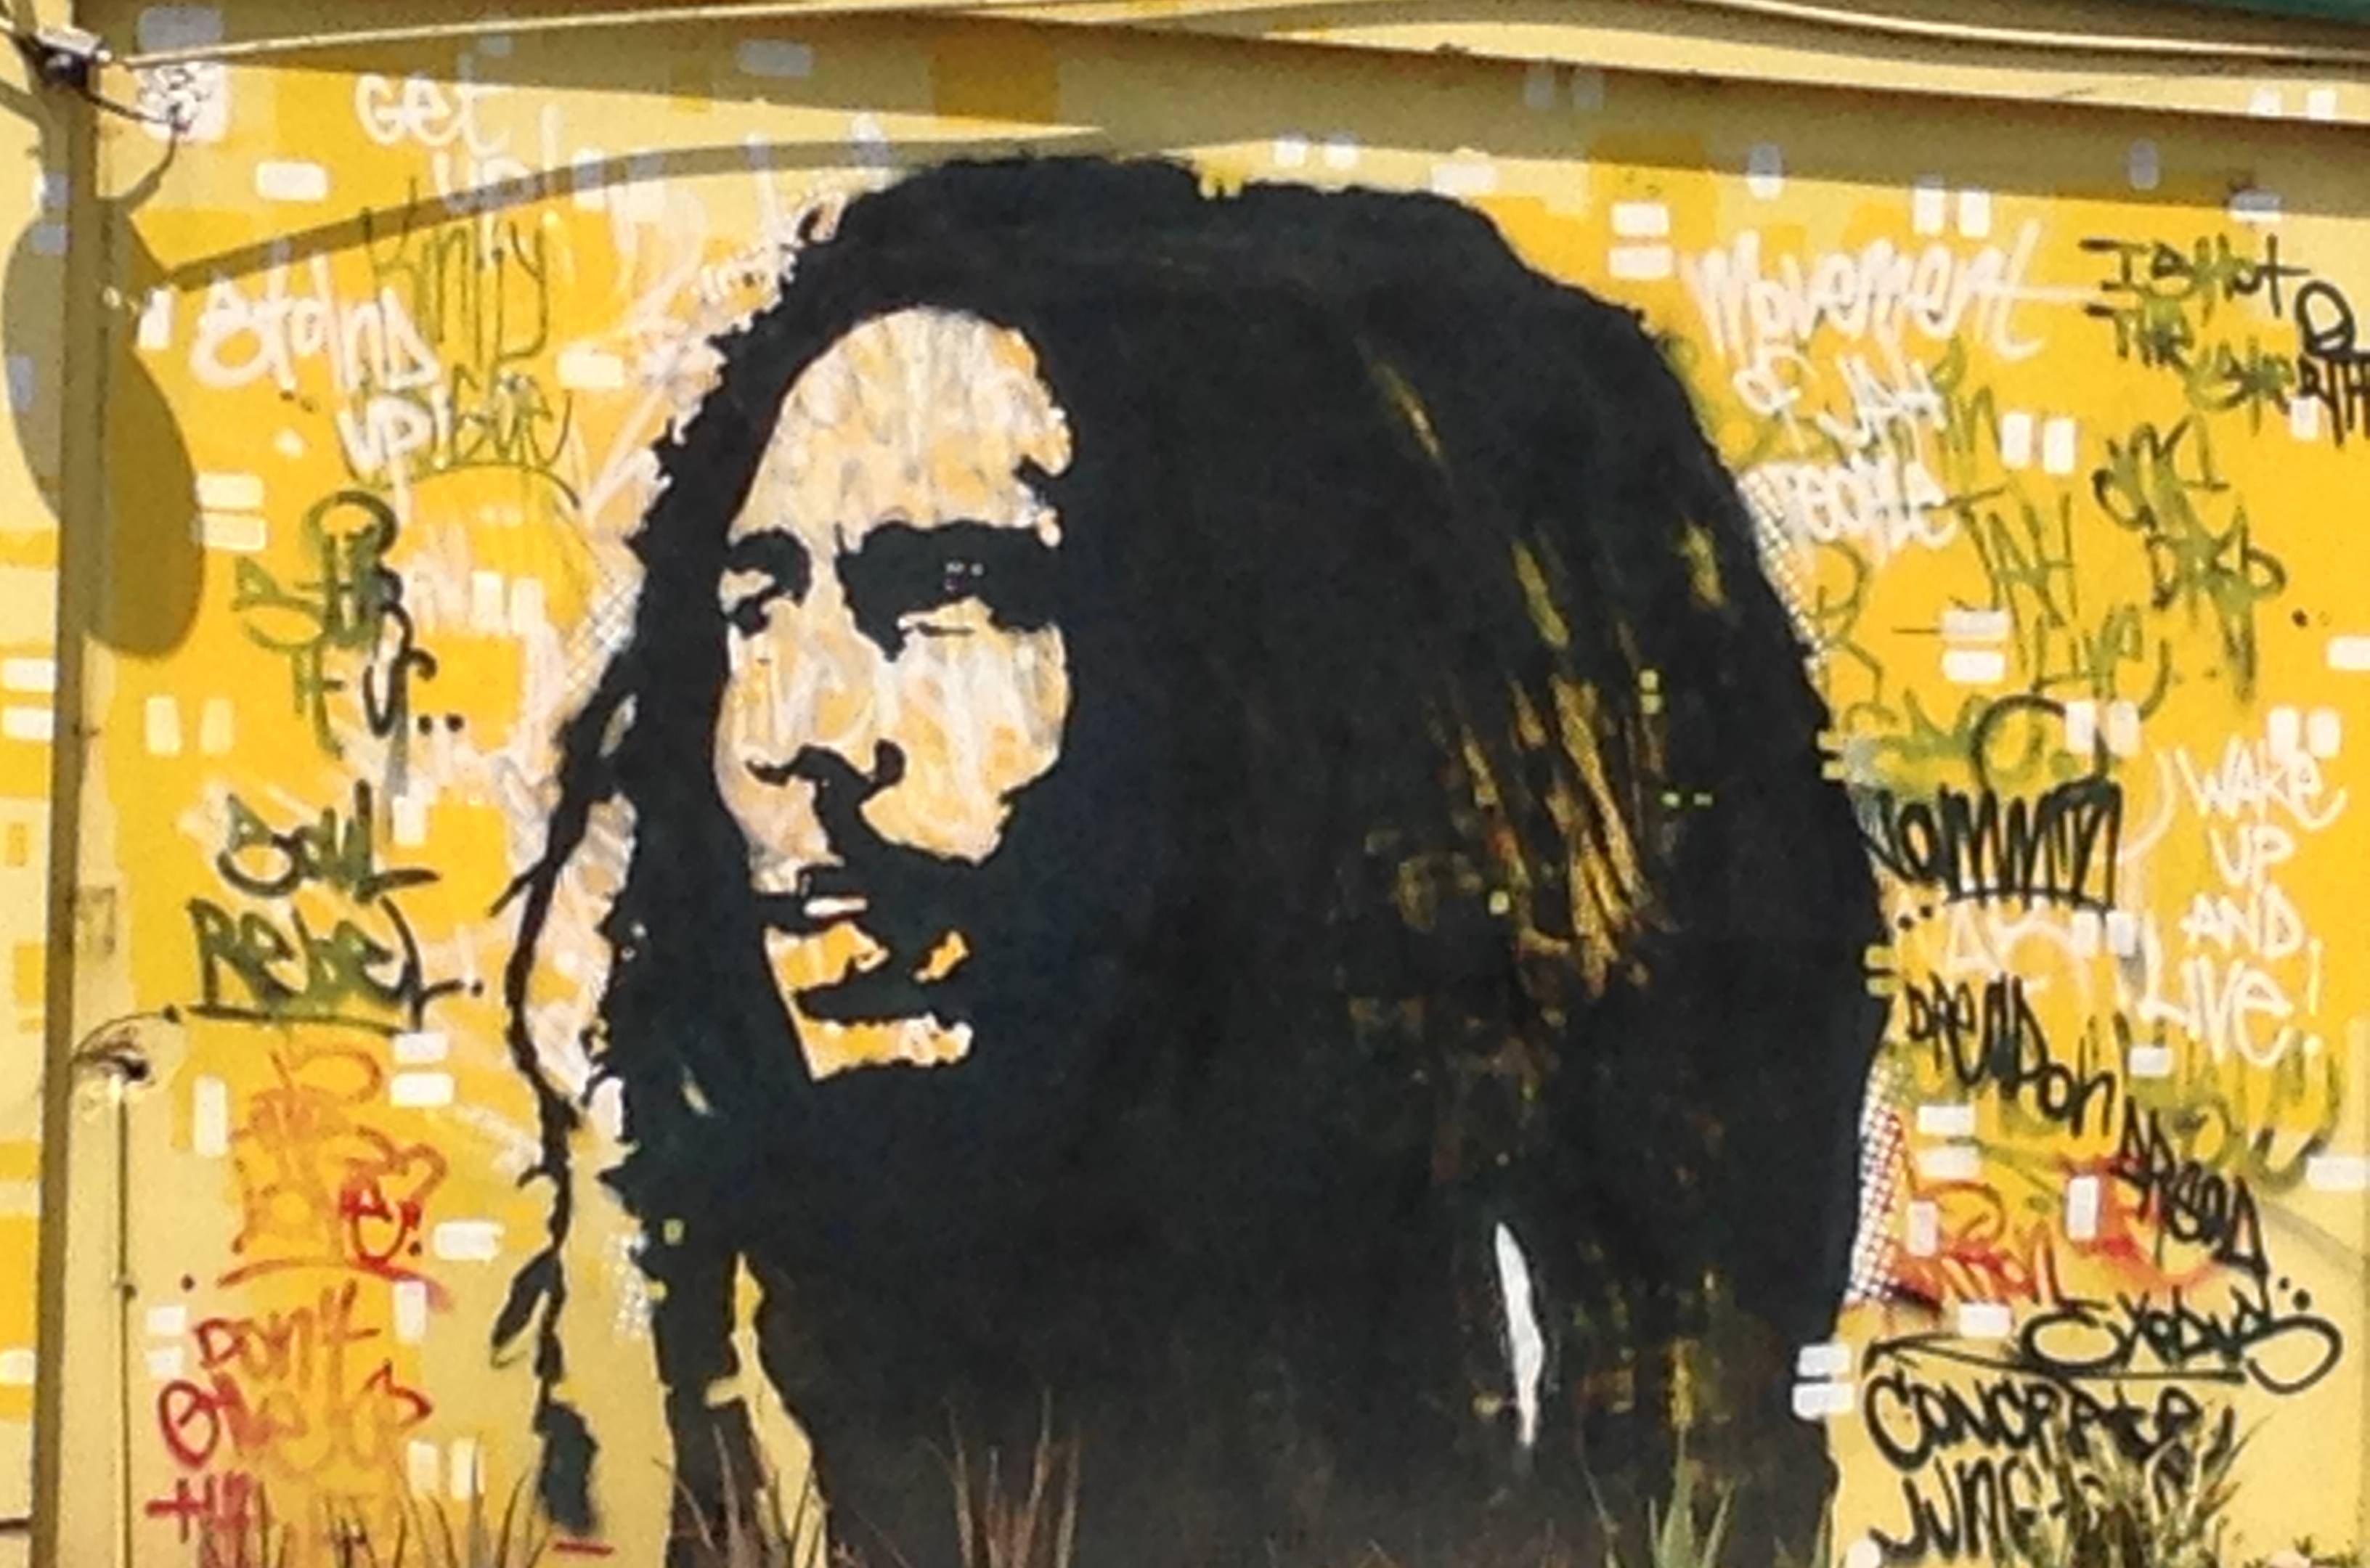 Bob Marley birthday bash